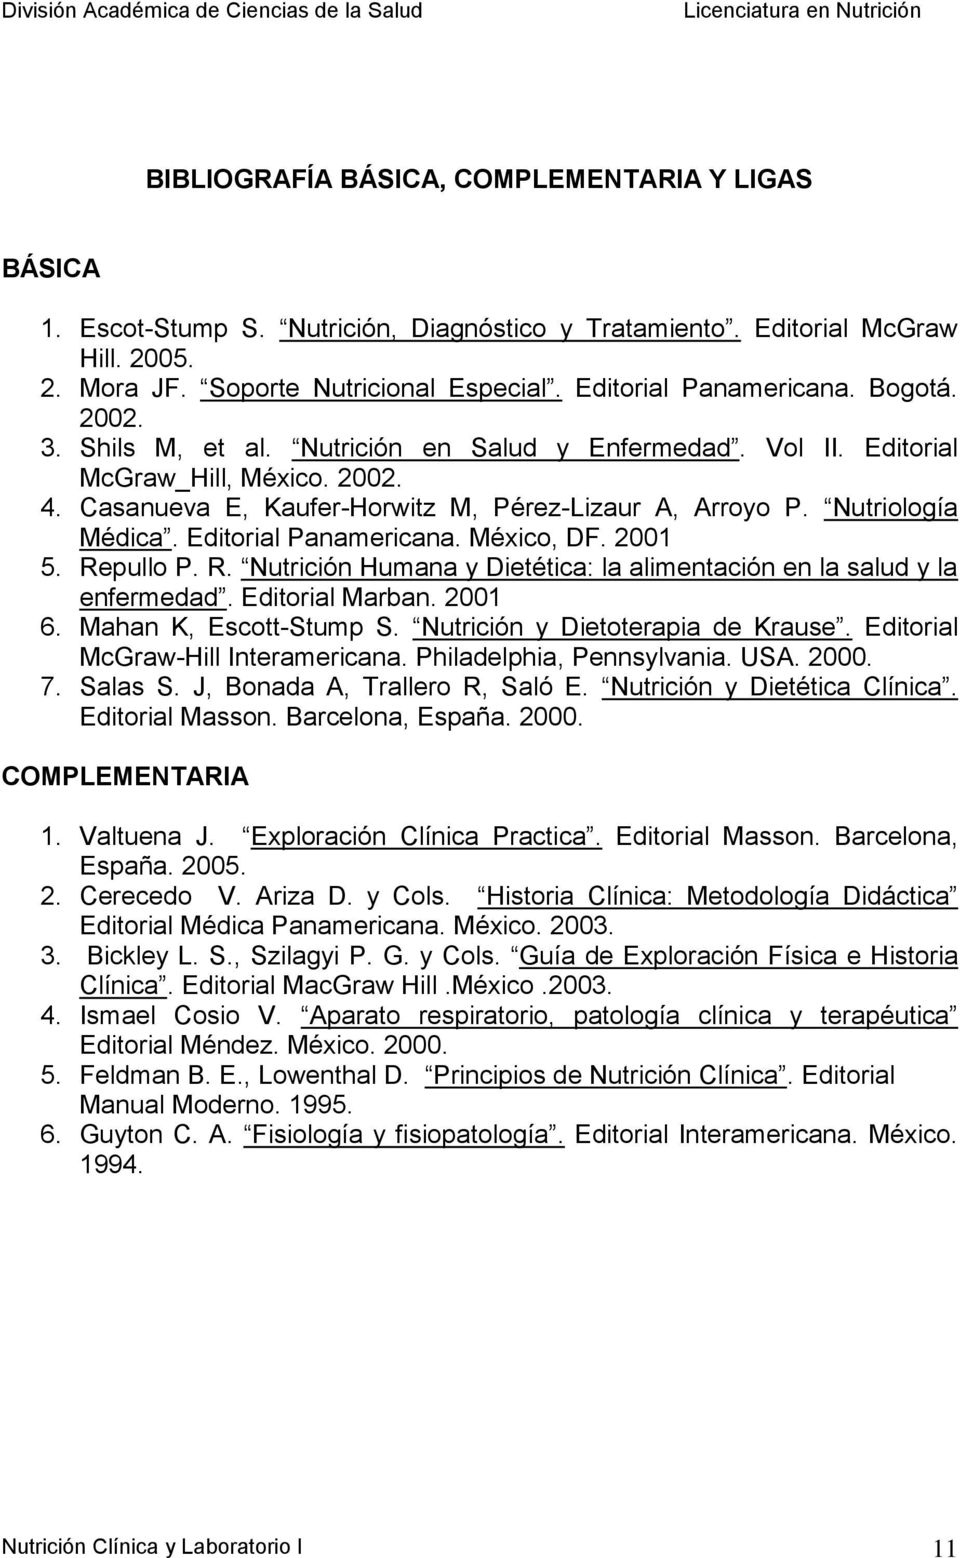 Nutriología Médica. Editorial Panamericana. México, DF. 2001 5. Repullo P. R. Nutrición Humana y Dietética: la alimentación en la salud y la enfermedad. Editorial Marban. 2001 6.